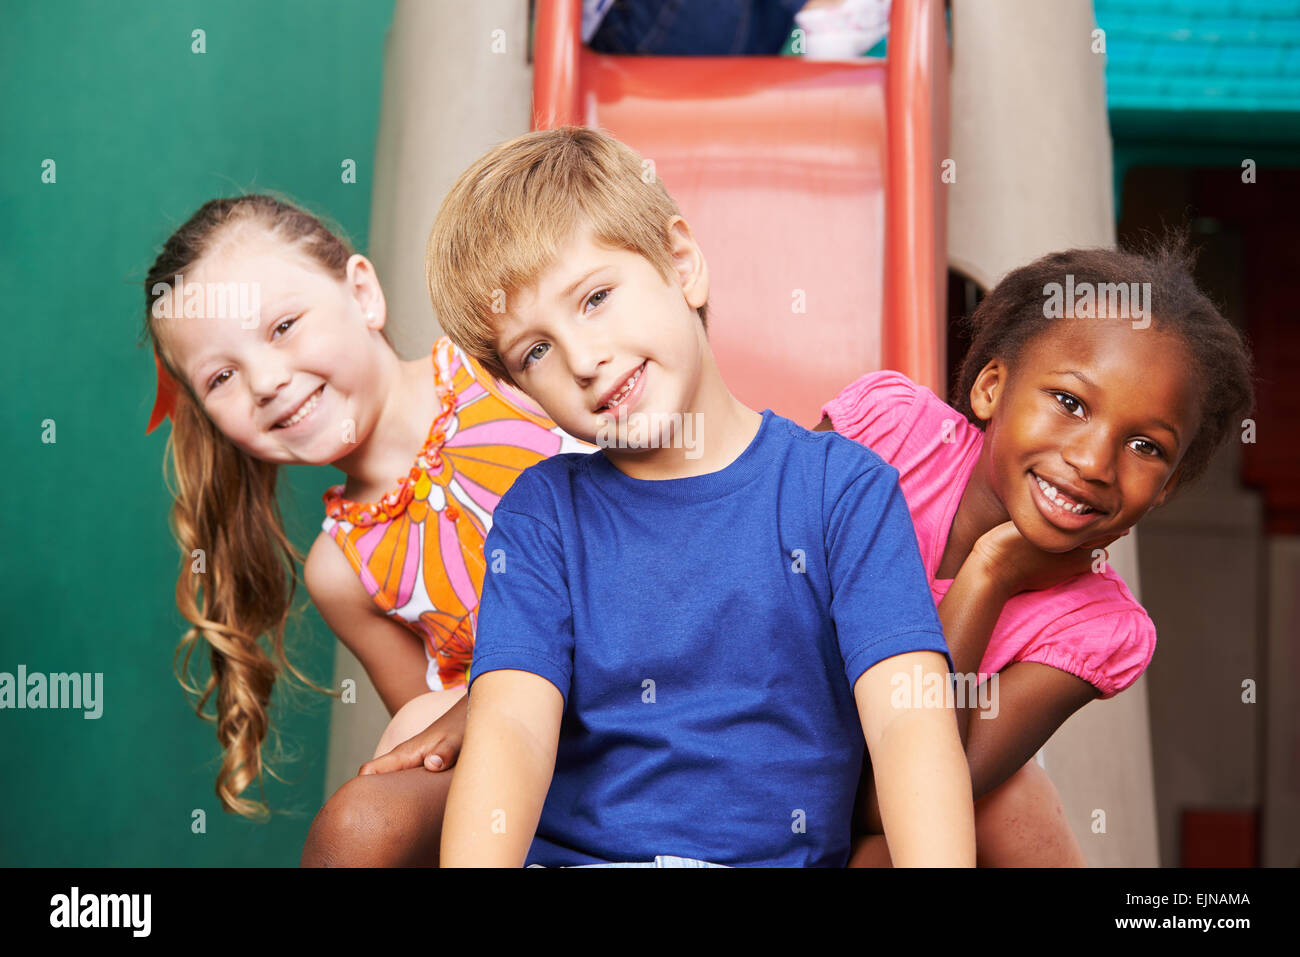 Trois enfants heureux assis sur une diapositive de la maternelle Banque D'Images